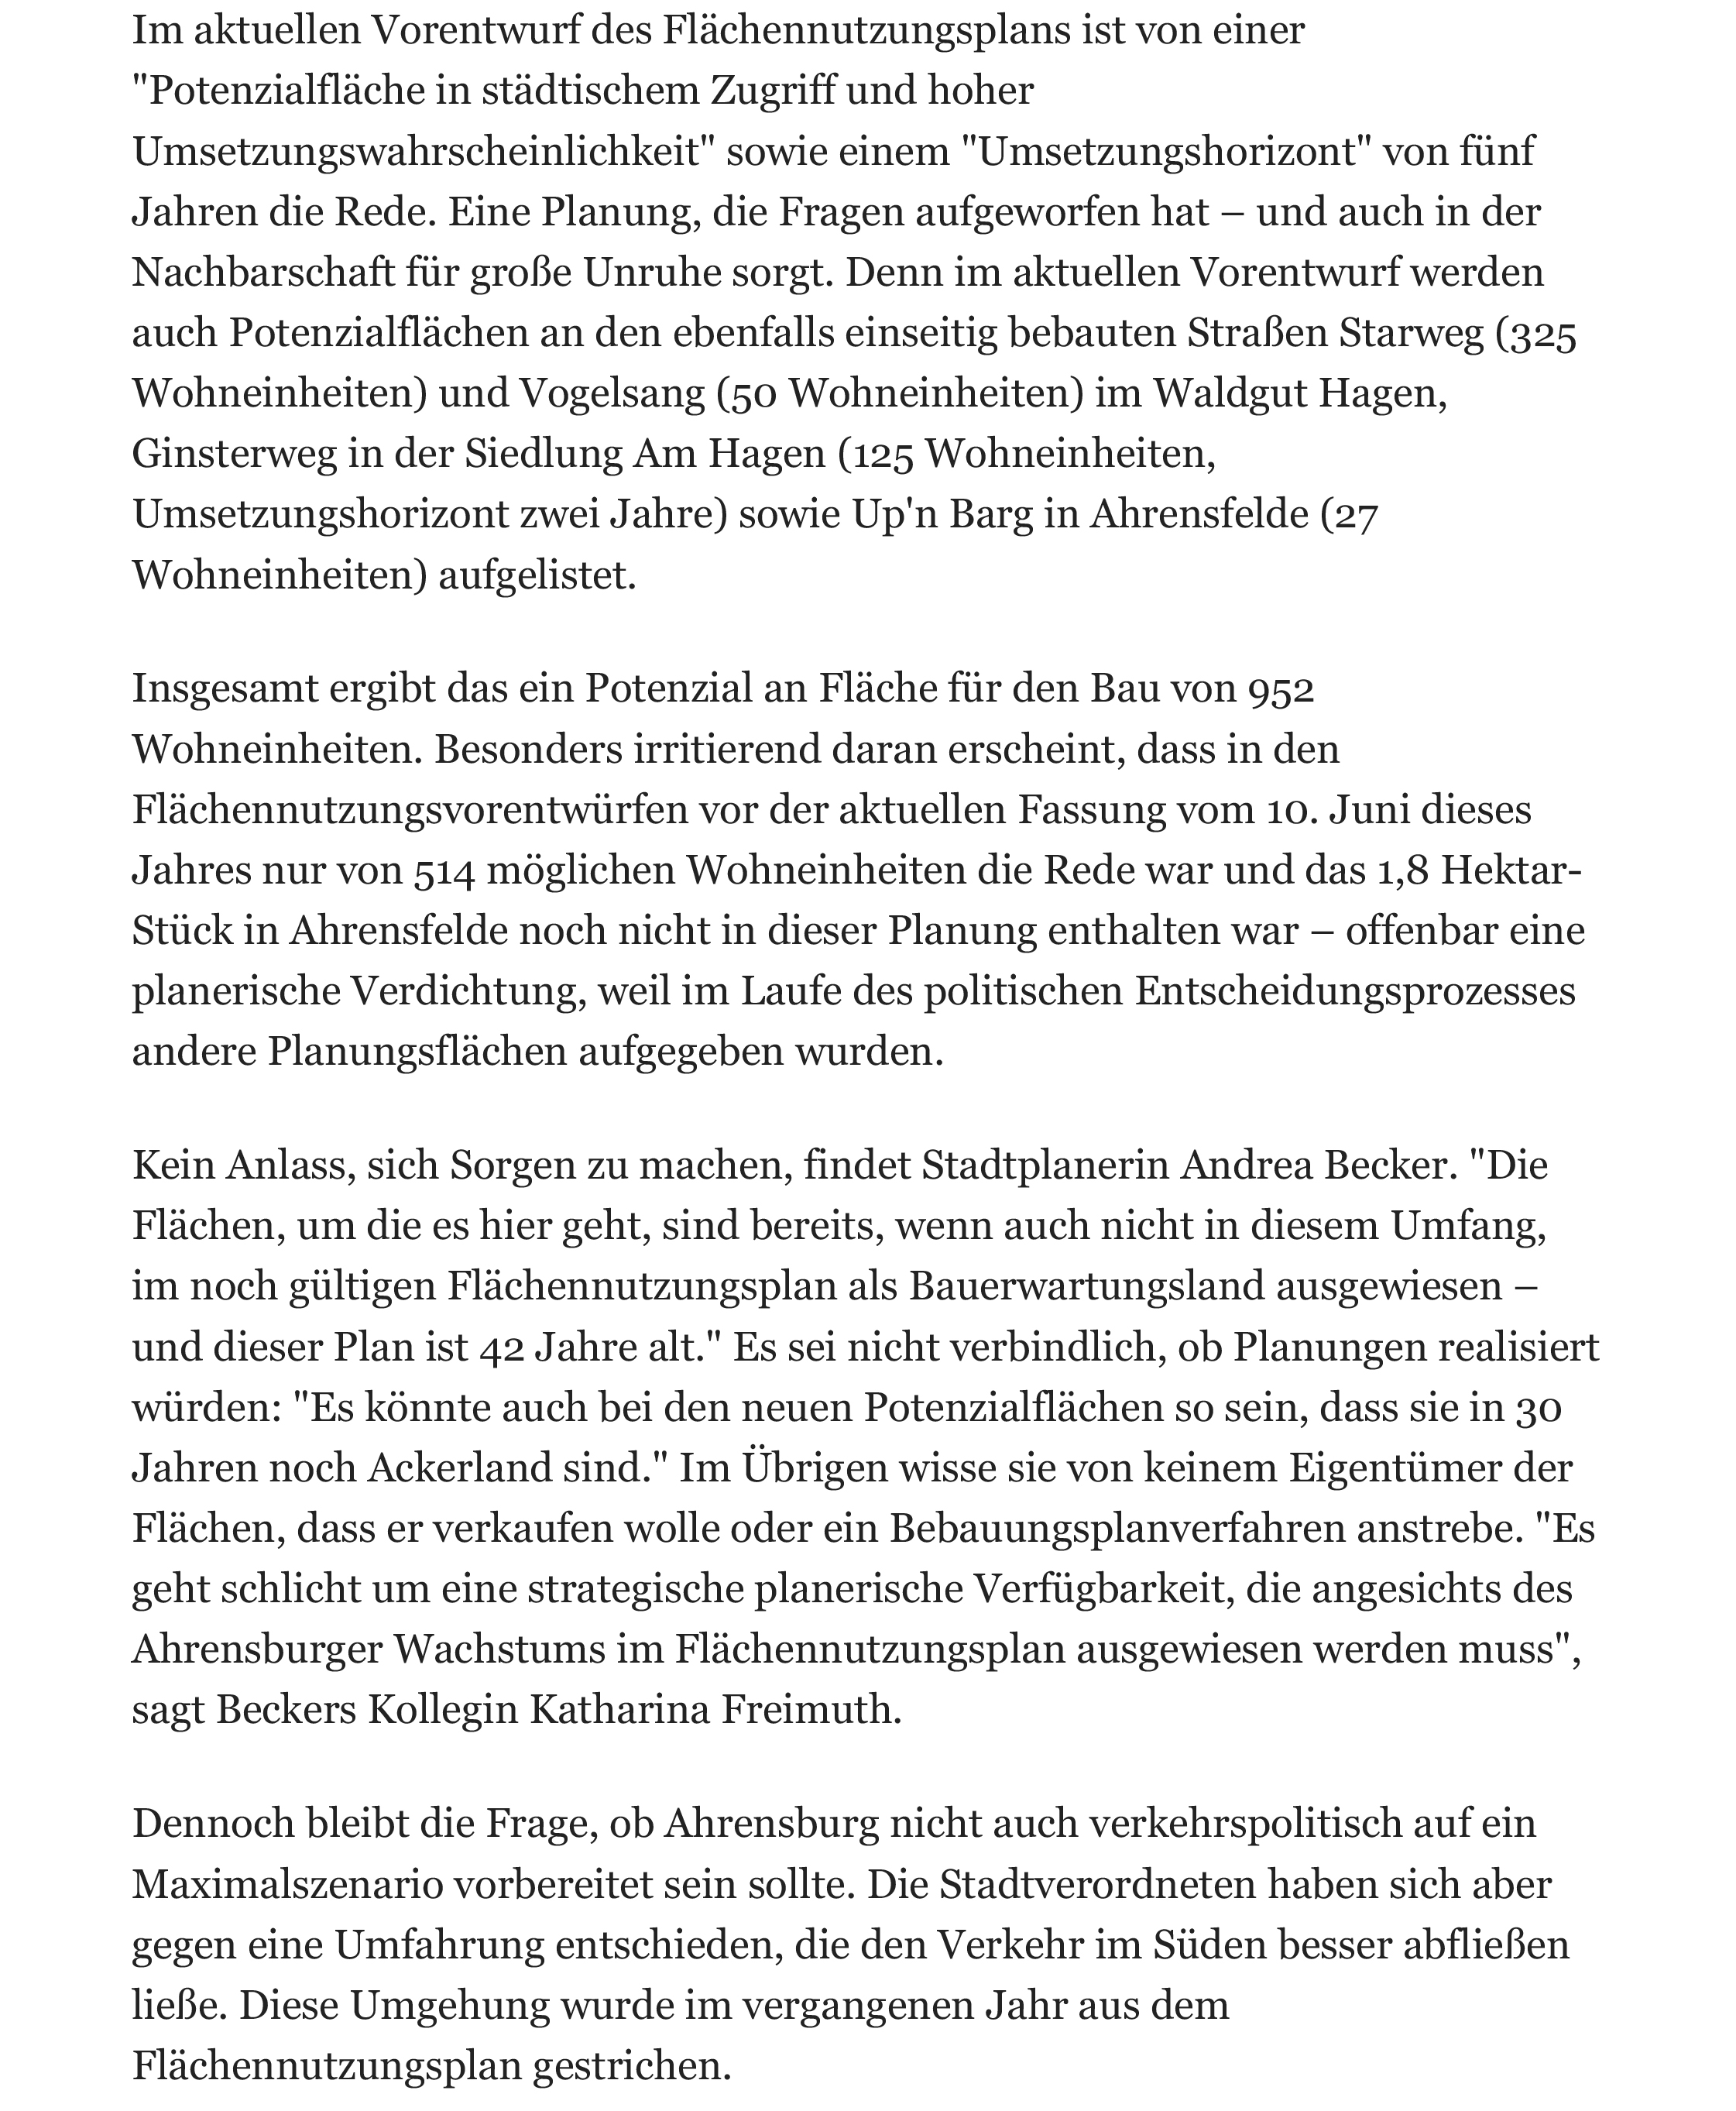 2016-11-01_Ahrensburg FNP_Hamburger Abendblatt-3